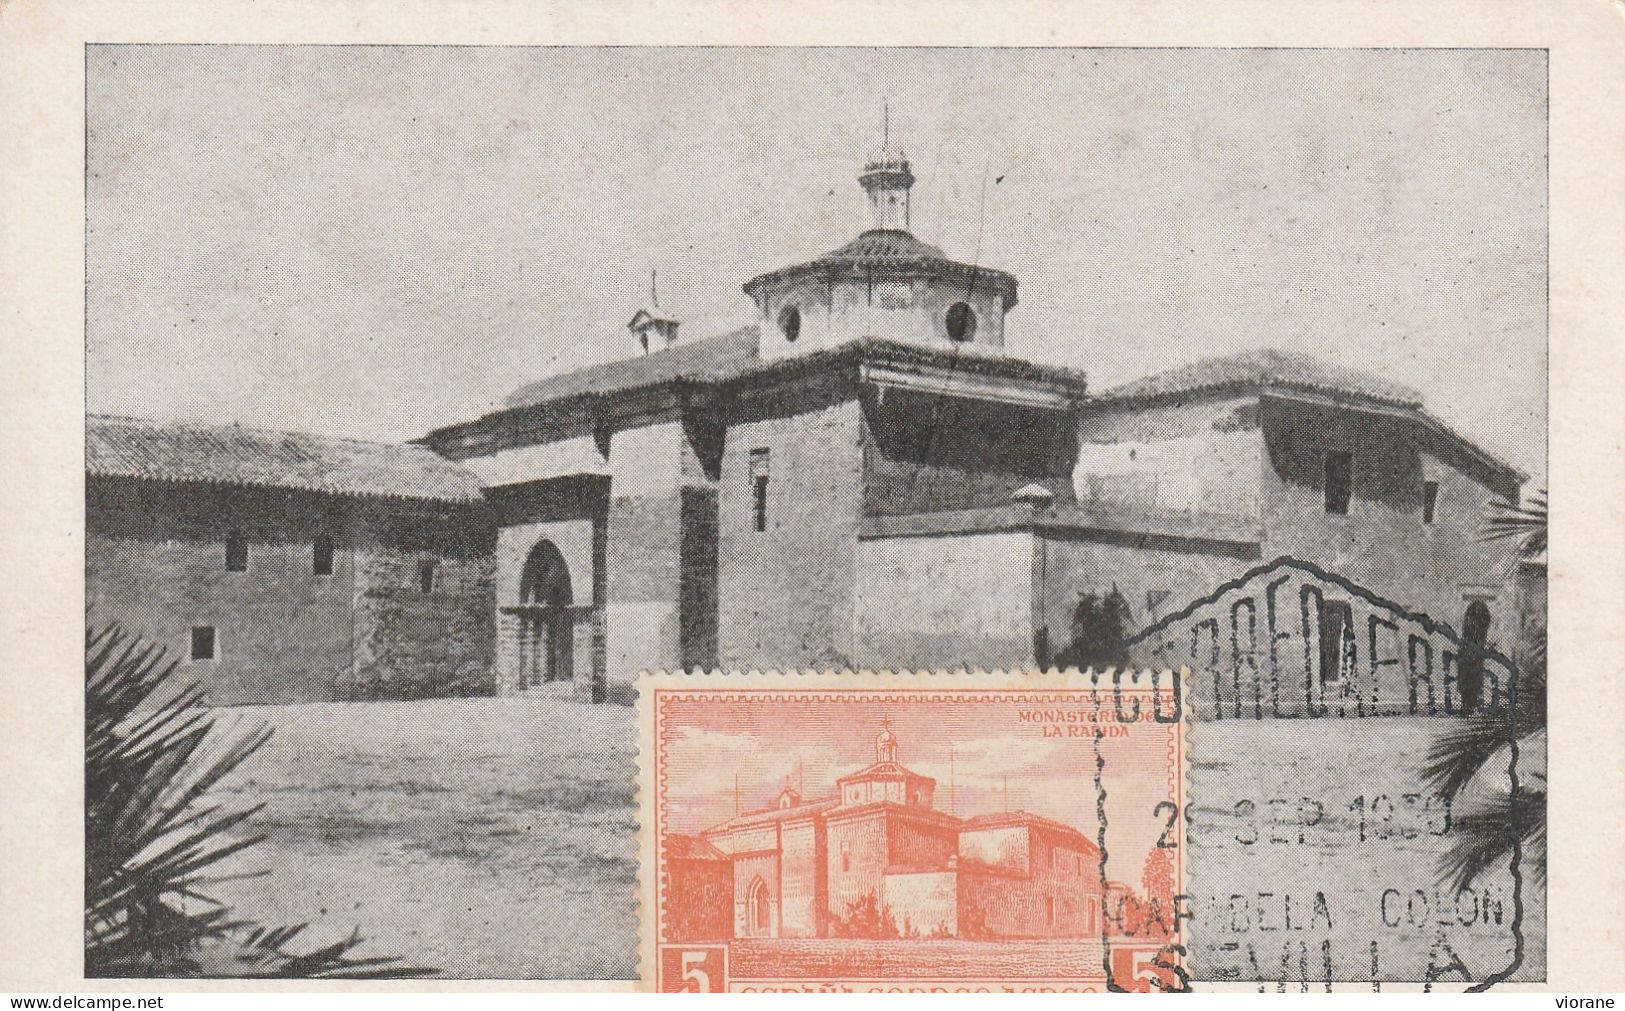 Carte Maximum   -   Monasterio De La Rabida - Huelva